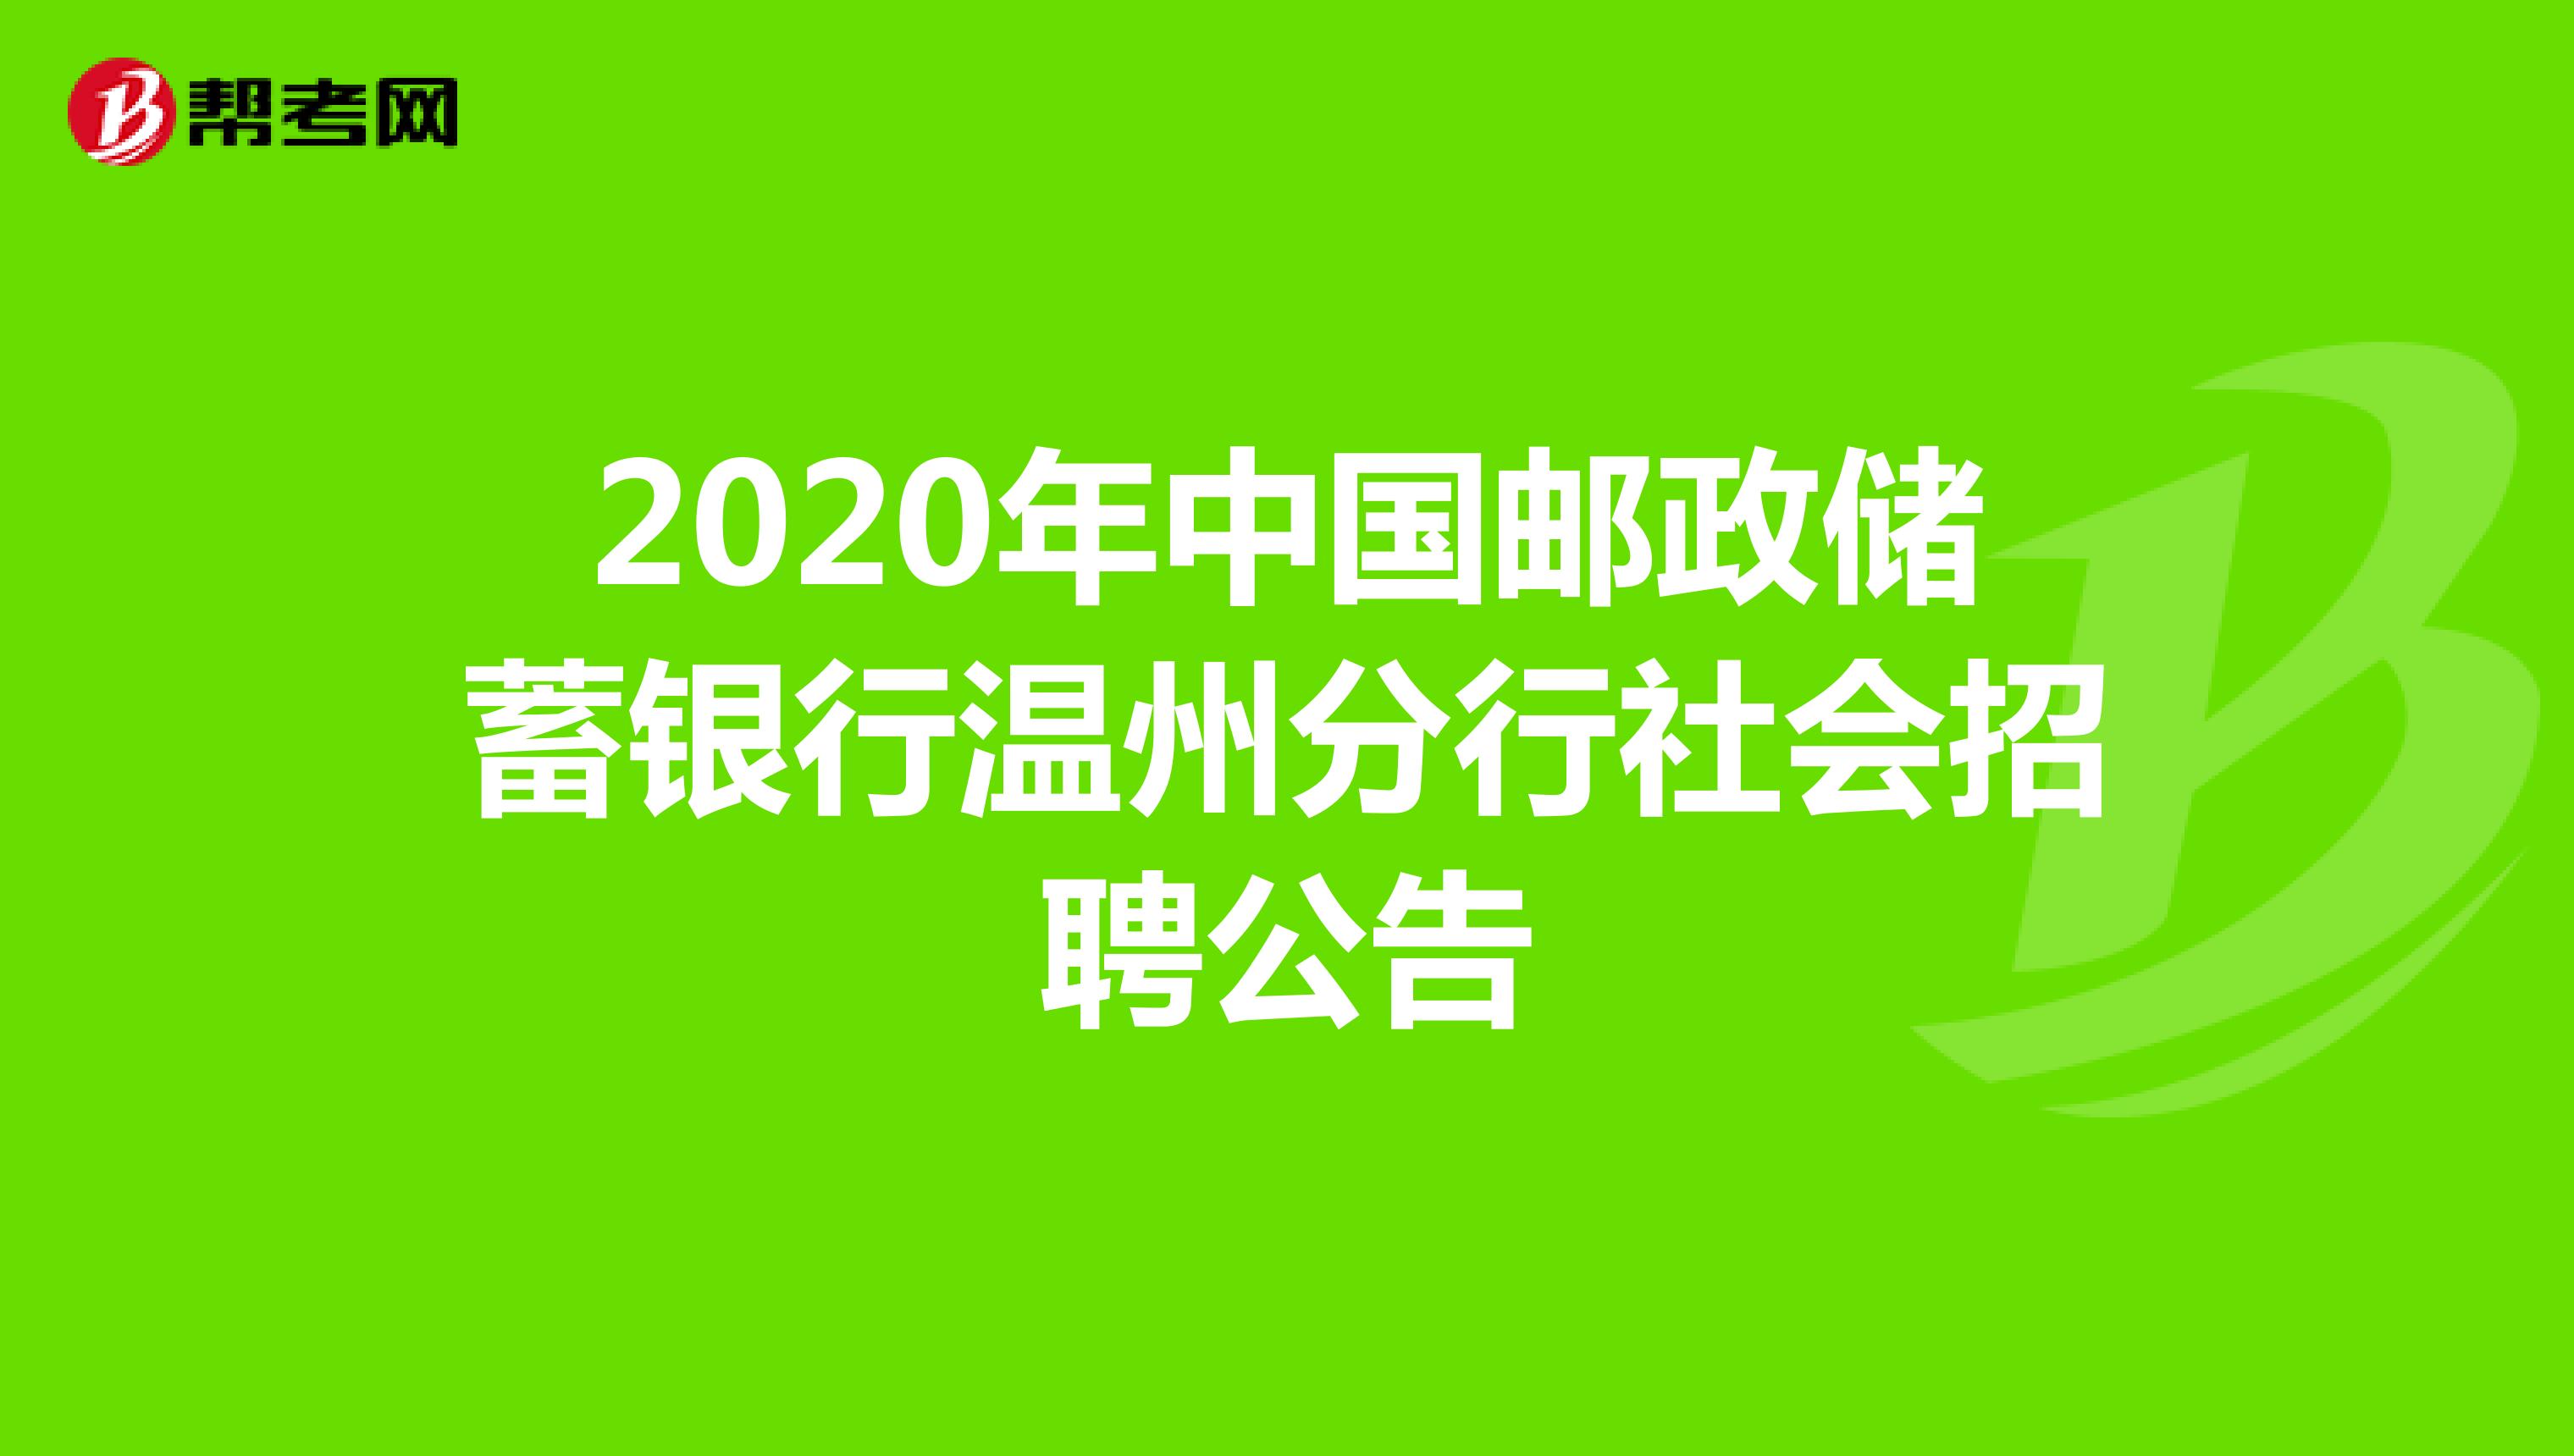 2020年中国邮政储蓄银行温州分行社会招聘公告